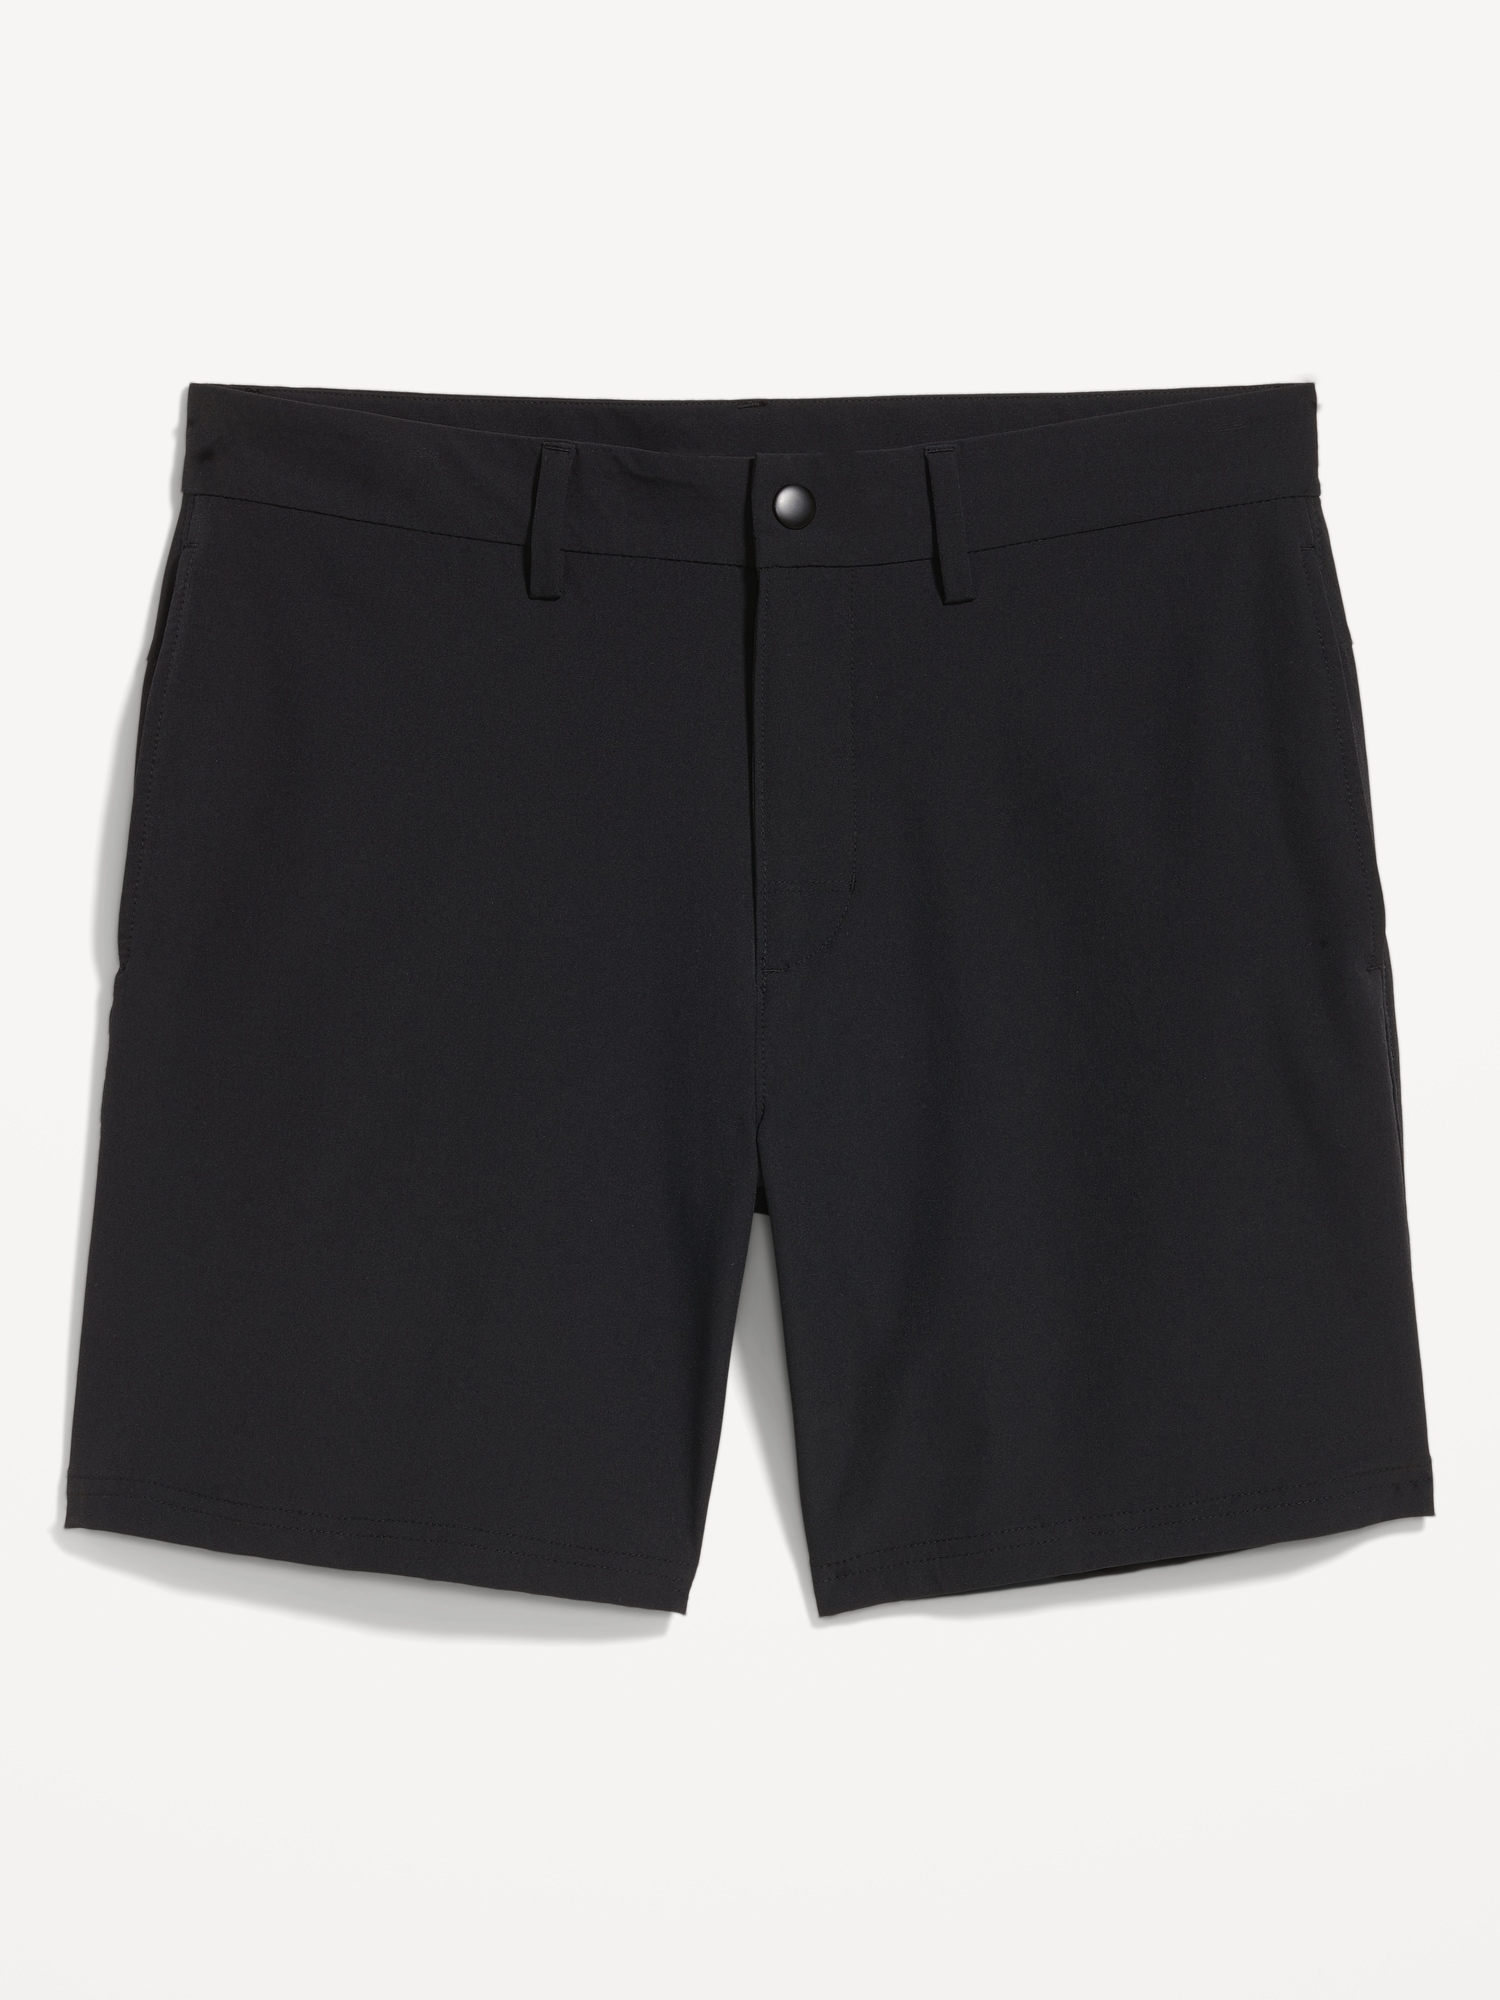 Old Navy StretchTech Nylon Chino Shorts for Men -- 7-inch inseam black. 1